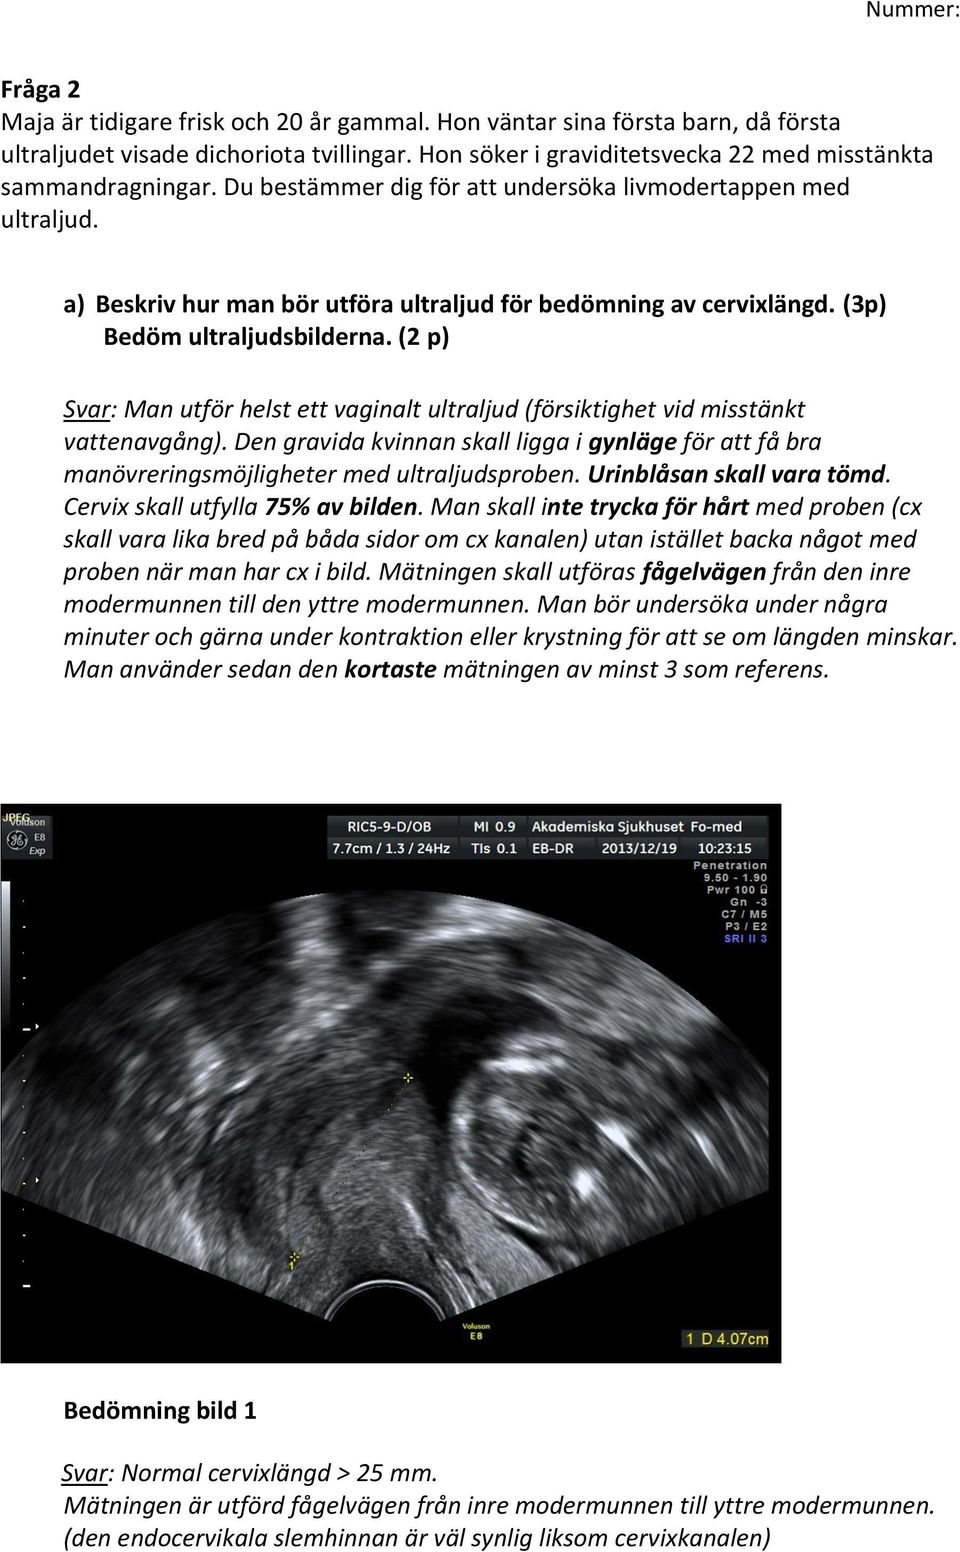 (2 p) Svar: Man utför helst ett vaginalt ultraljud (försiktighet vid misstänkt vattenavgång). Den gravida kvinnan skall ligga i gynläge för att få bra manövreringsmöjligheter med ultraljudsproben.